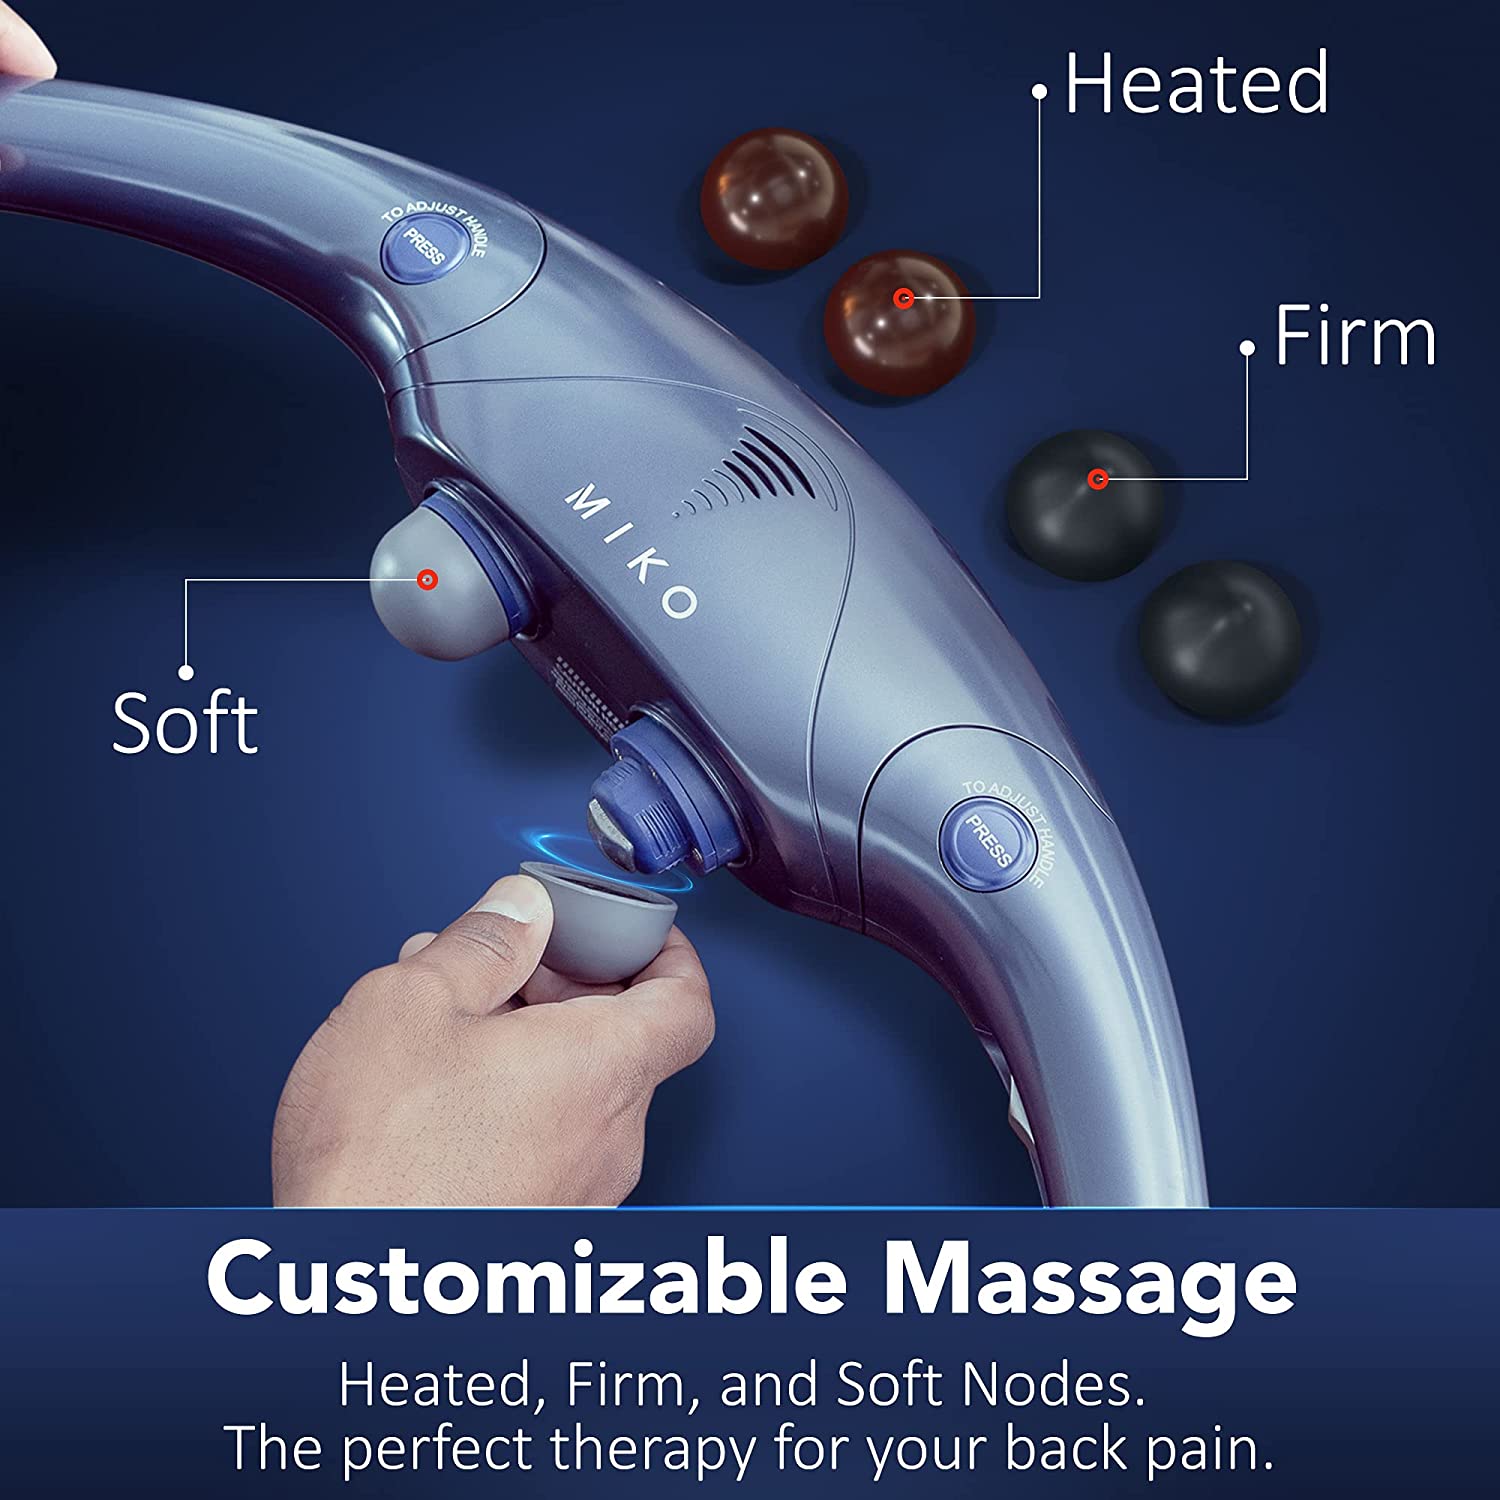 Portable Folding Massage Chair-Shiatsu Neck and Back Massager with Heat,  Adj